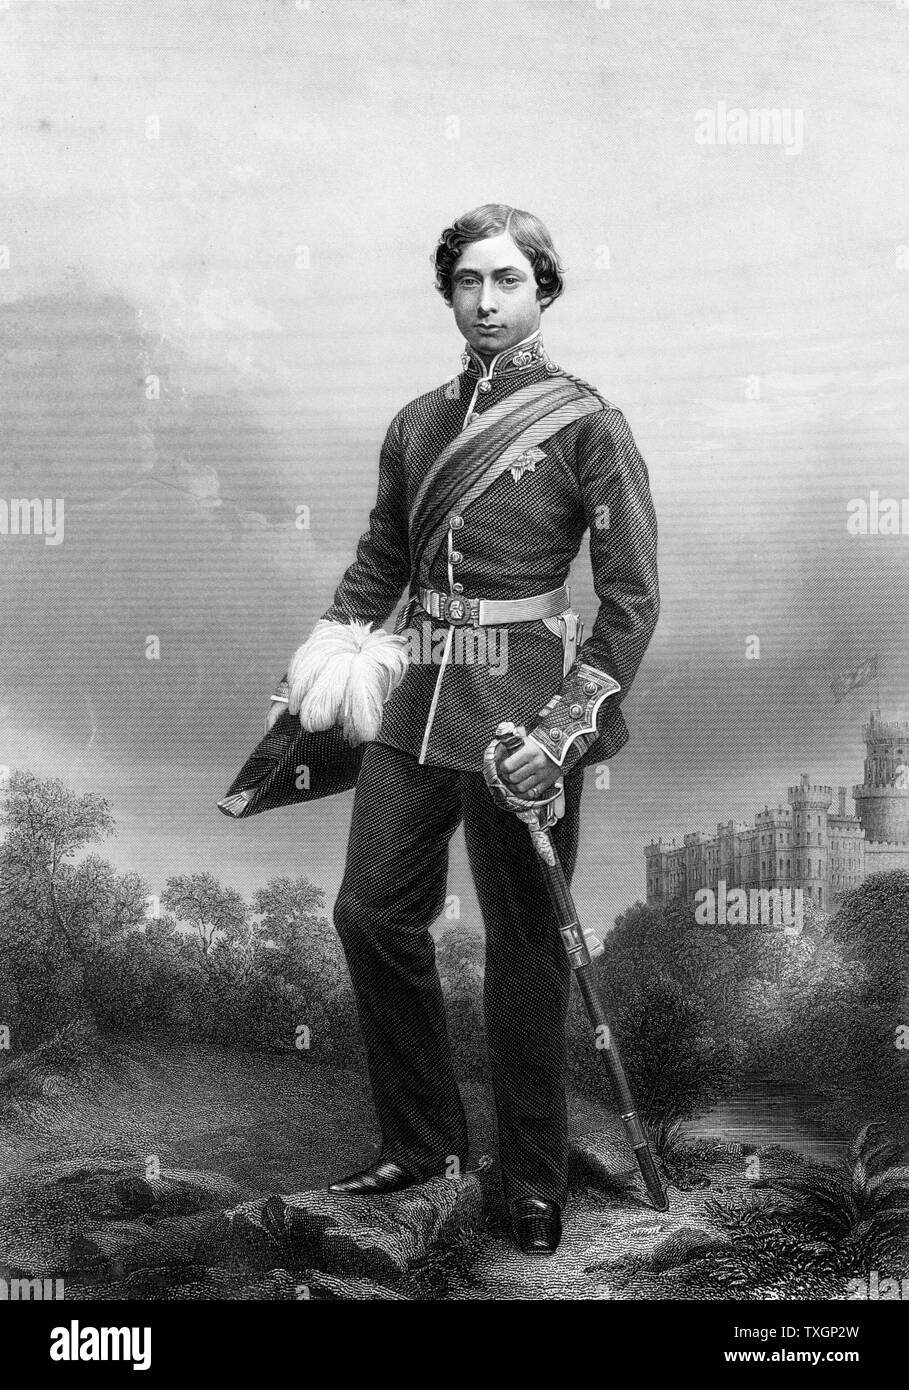 Edward VII (1841-1910) König von Großbritannien von 1901. Hier in der Uniform eines Oberst als Prinz von Wales. Gravur veröffentlicht C. 1860 Stockfoto